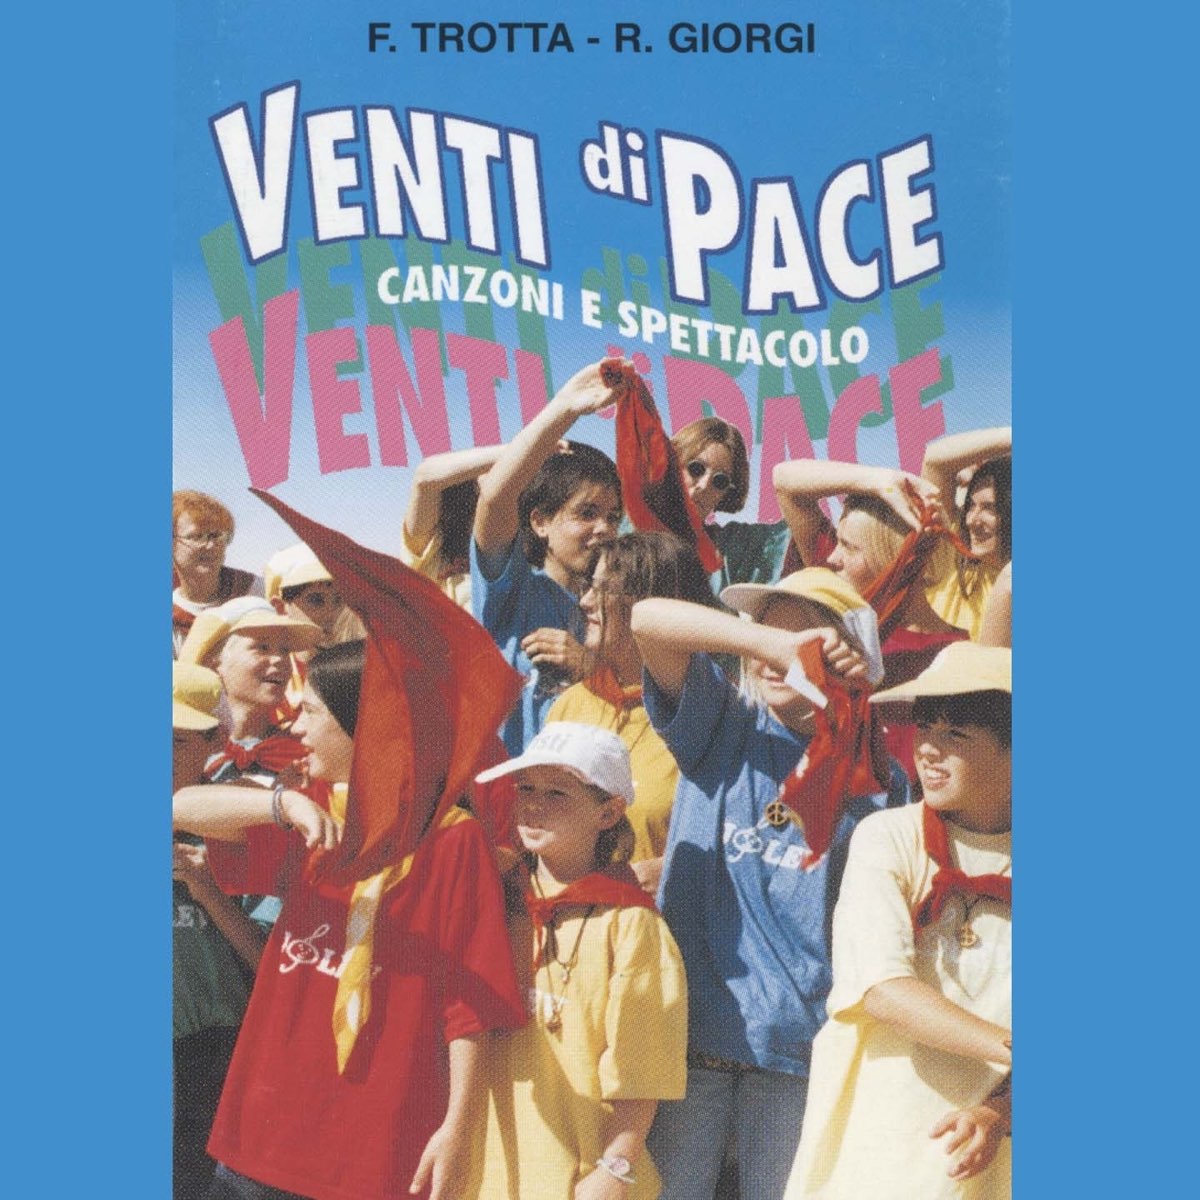 Venti di pace by Francesco Trotta & Renato Giorgi on Apple Music